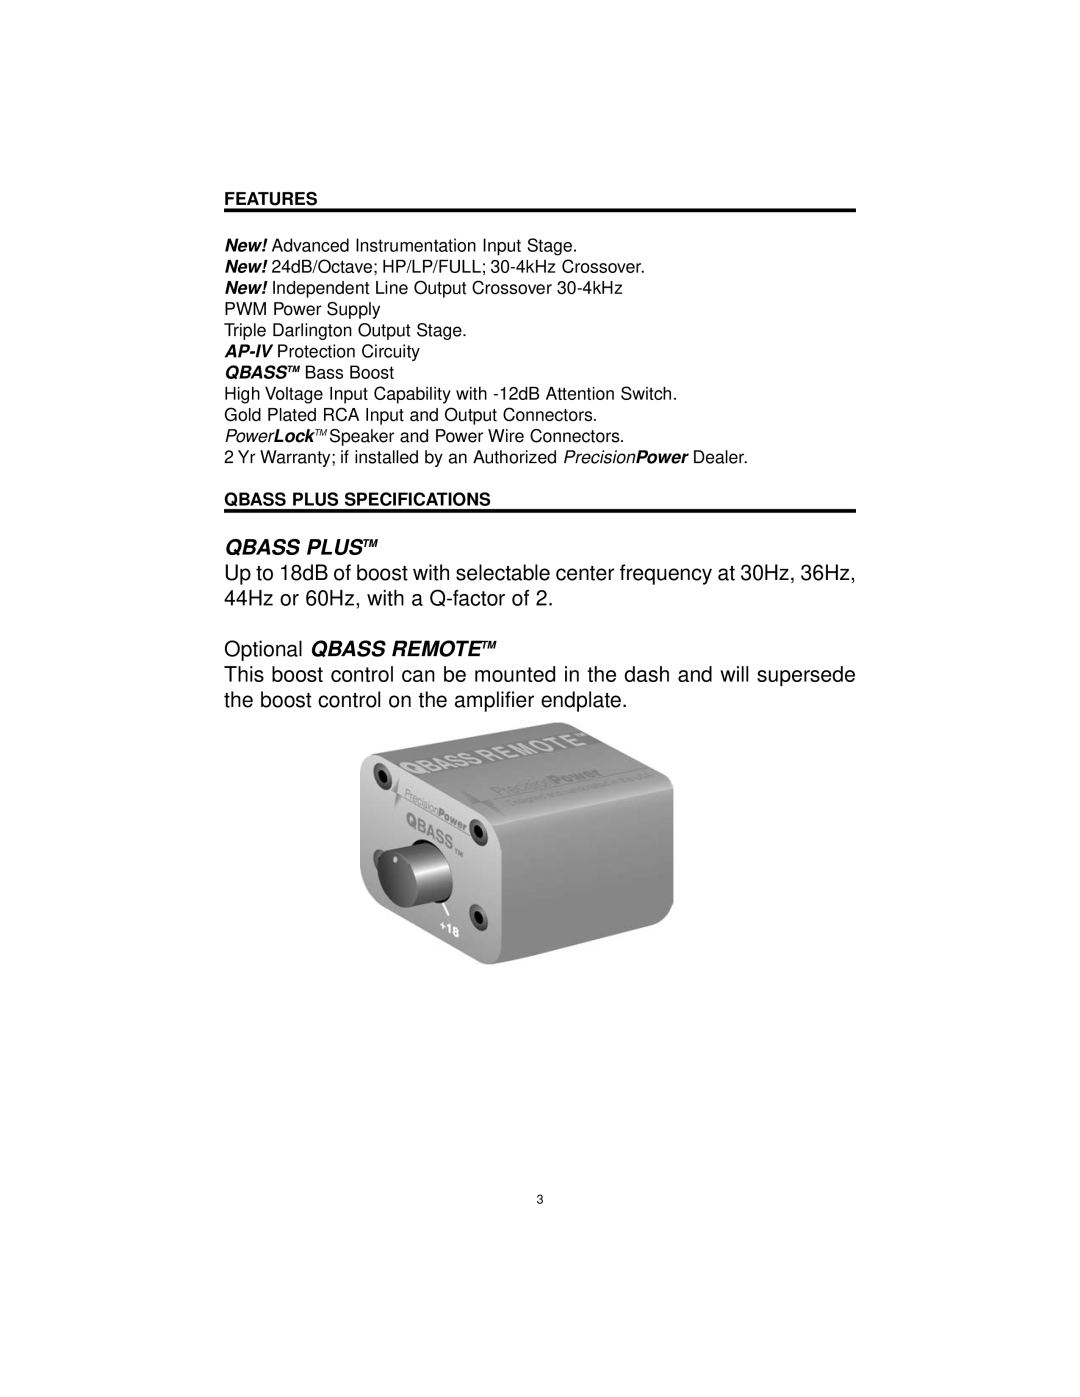 Precision Power DCX 500.2, DCX 300.2 manual Qbass Plustm, Optional QBASS REMOTETM, Features, Qbass Plus Specifications 